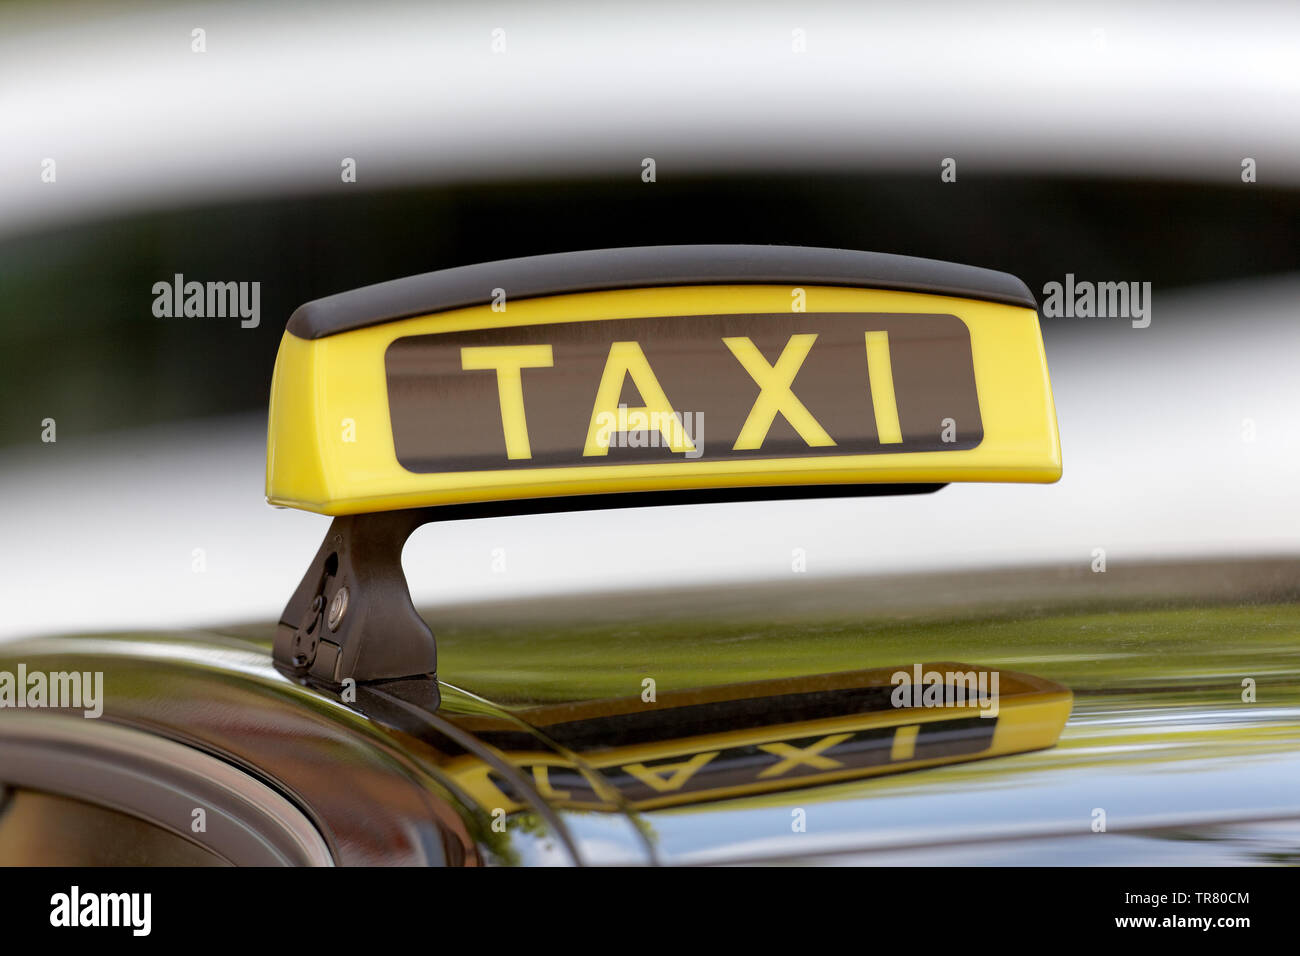 Taxi Schild, Deutschland Stockfotografie - Alamy